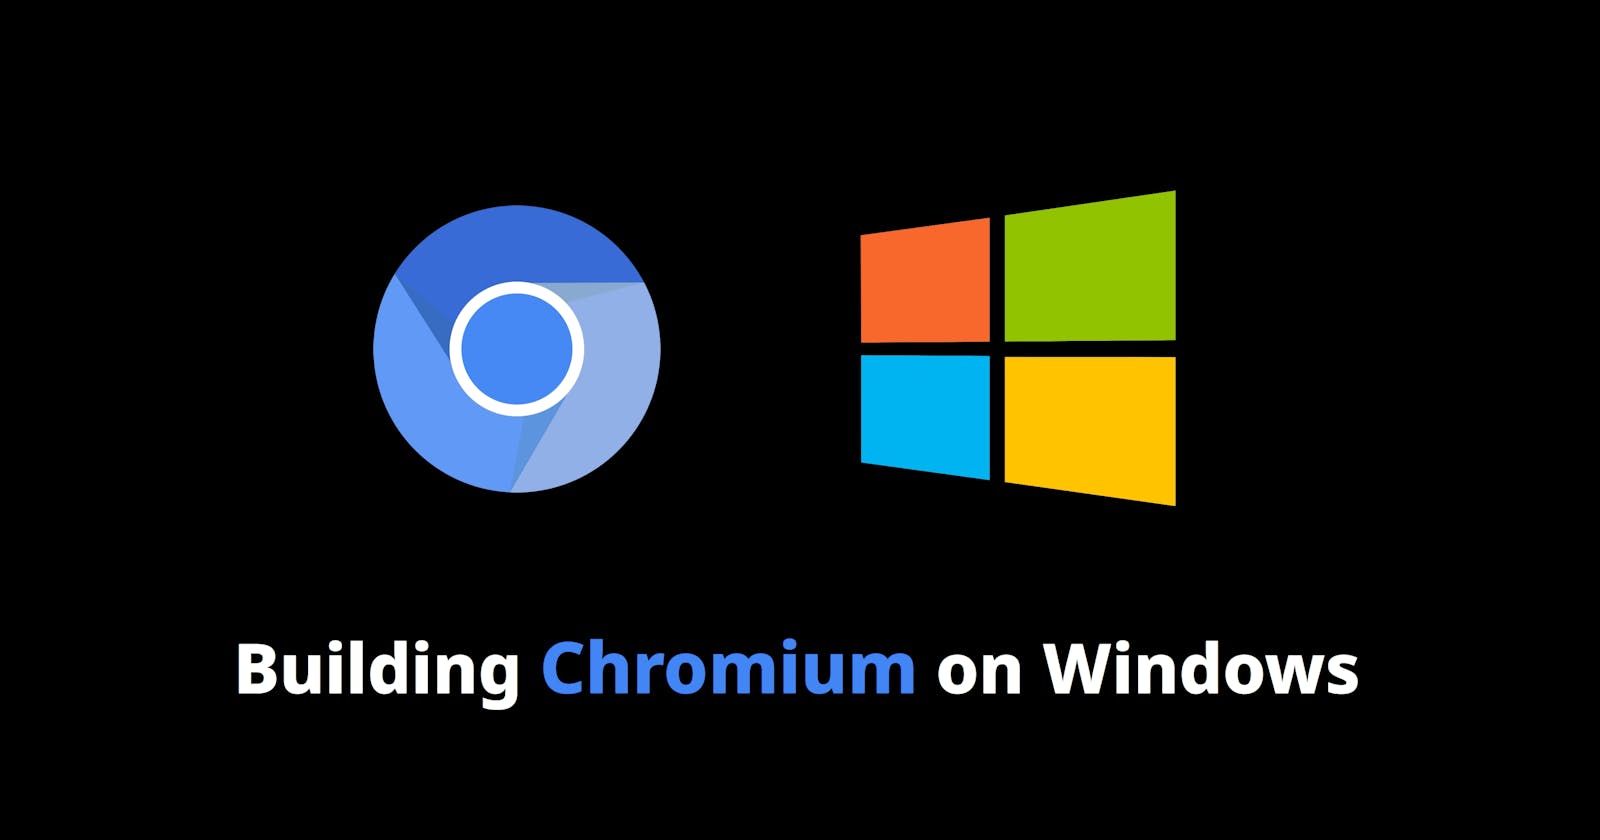 How to Build Chromium on Windows